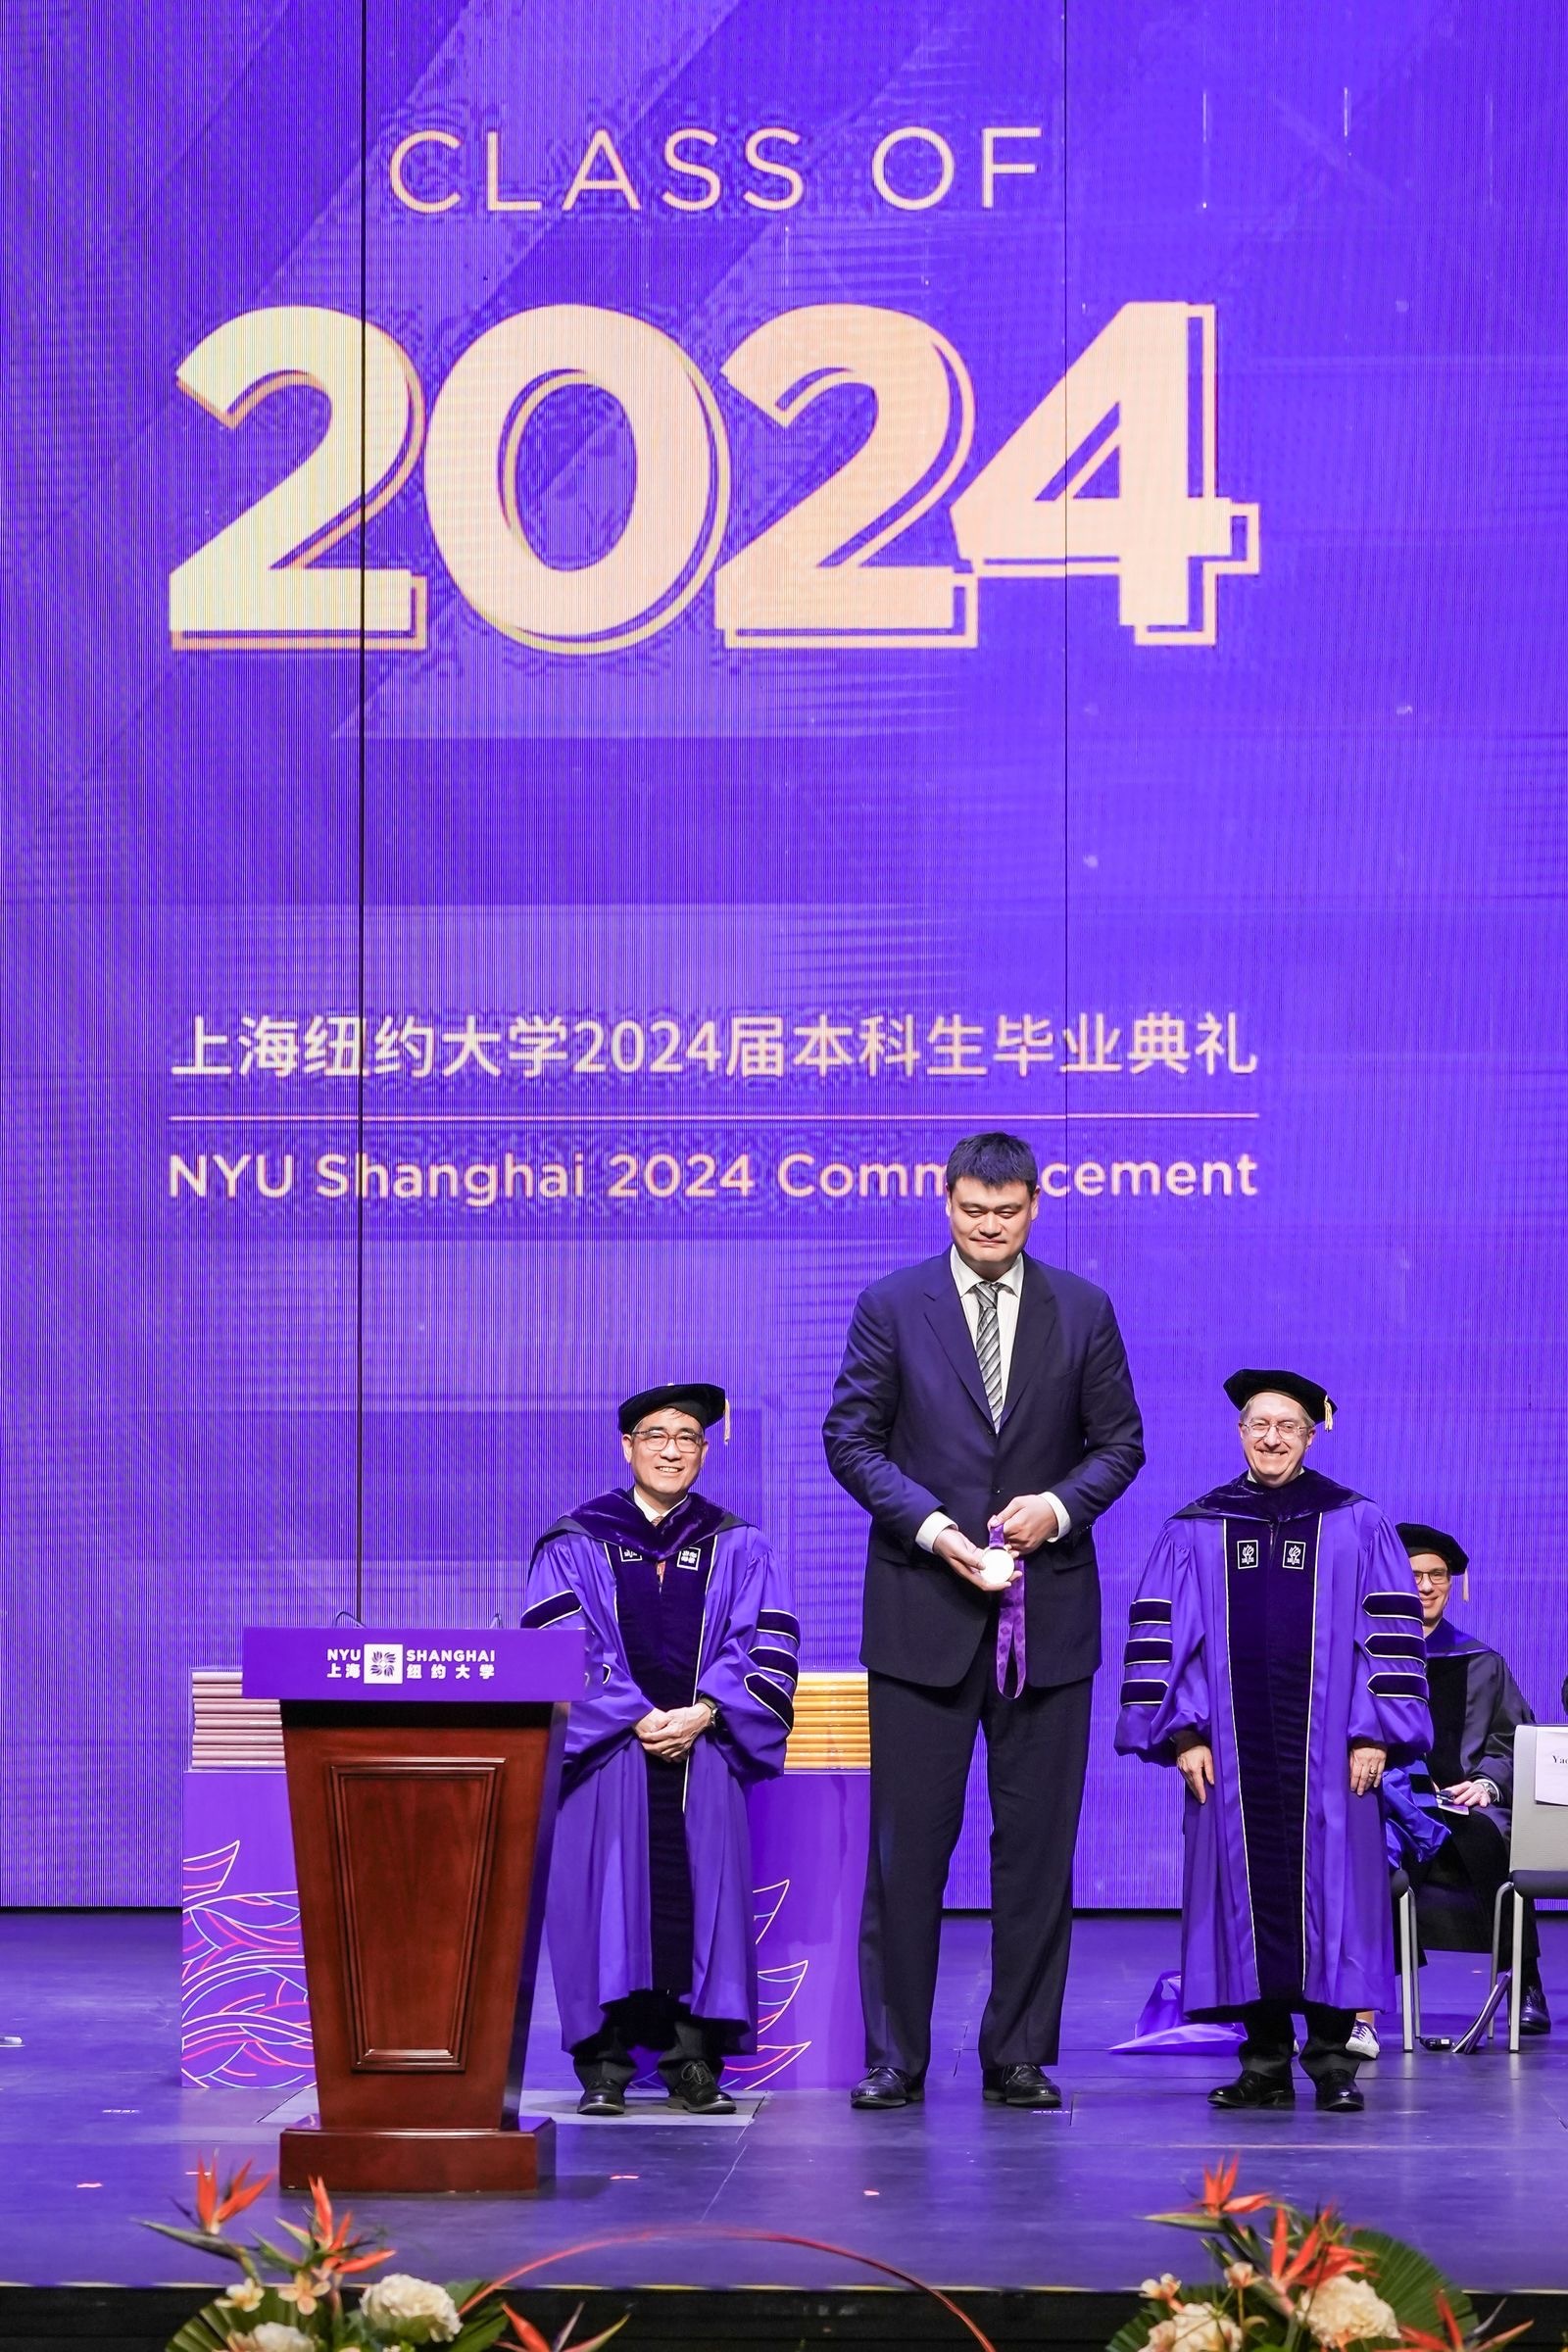 姚明现身上海纽约大学2024届本科生毕业典礼 本文图片均为上海纽约大学供图